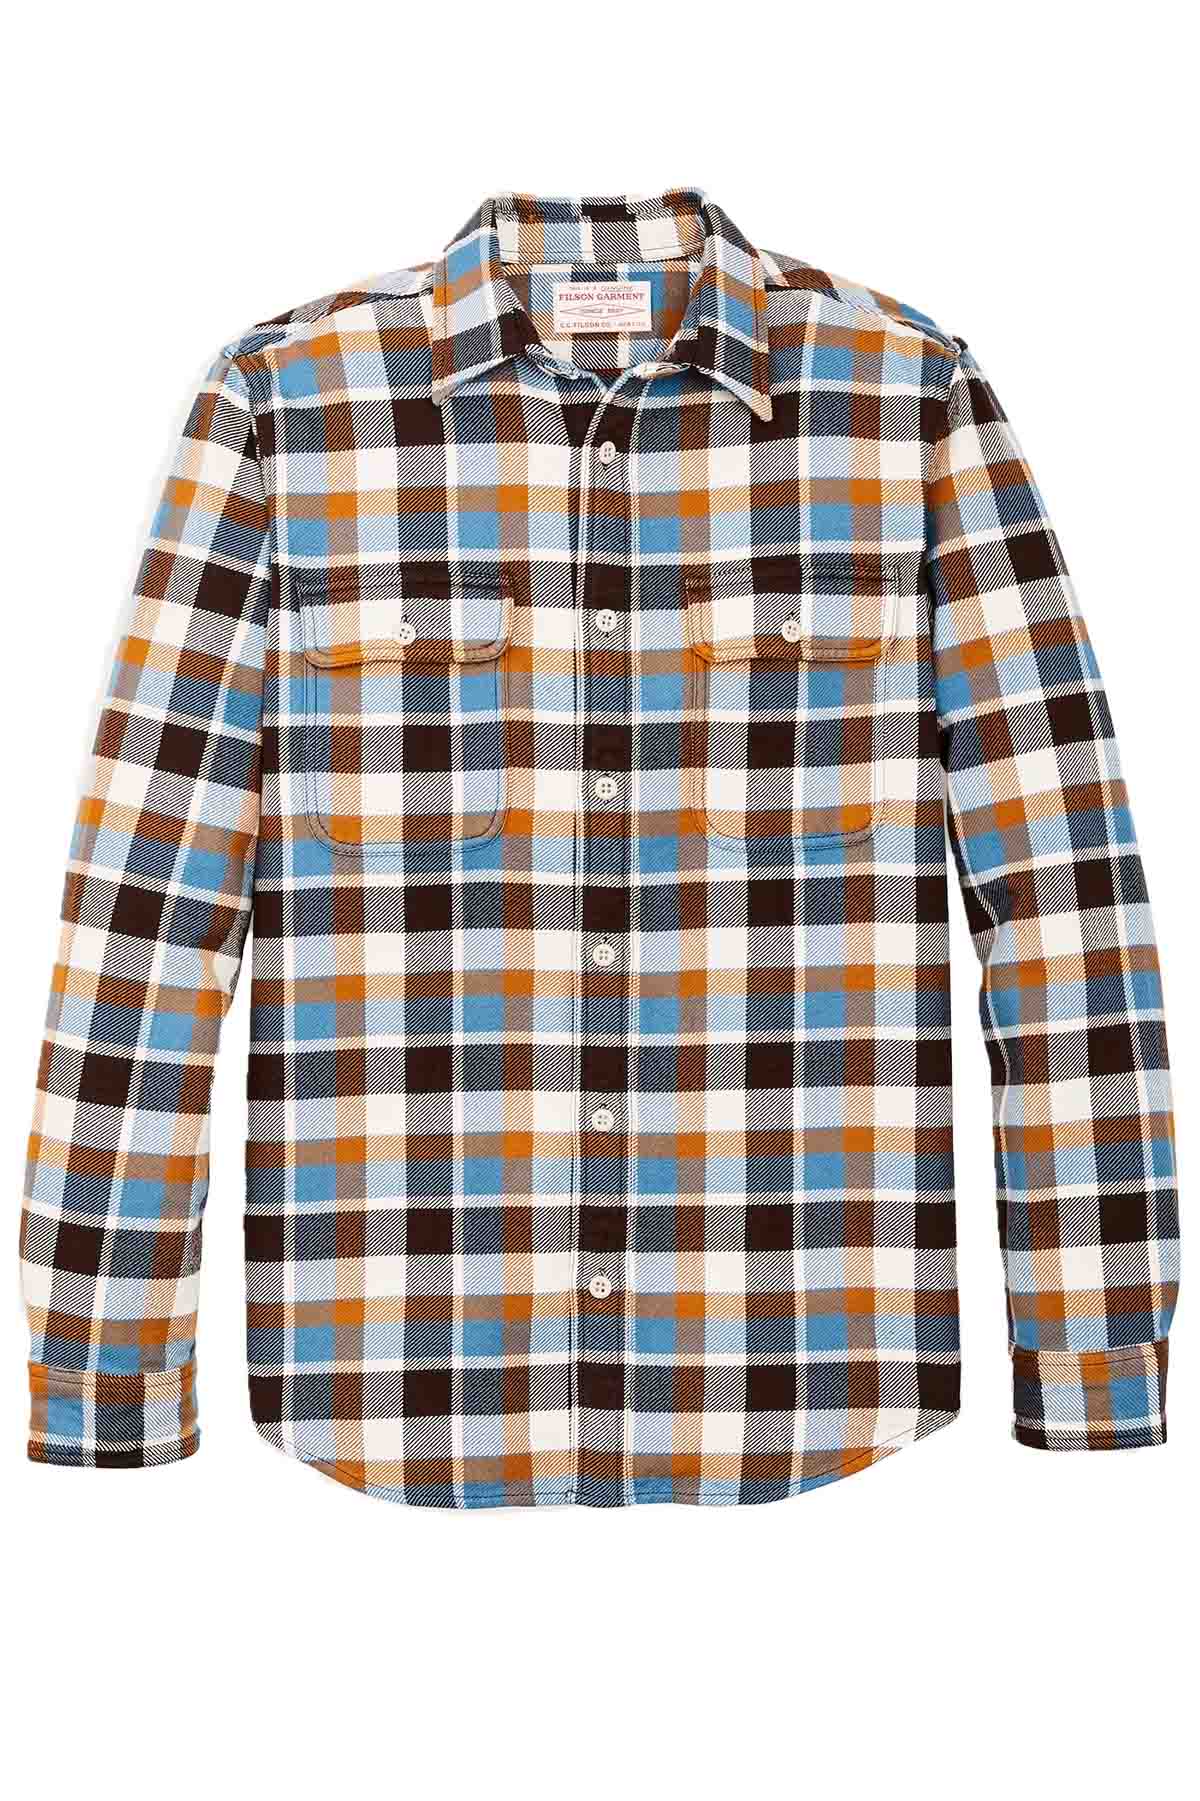 Filson - Vintage Flannel Workshirt - Brown/Cream/Ochre/Blue Plaid - Front